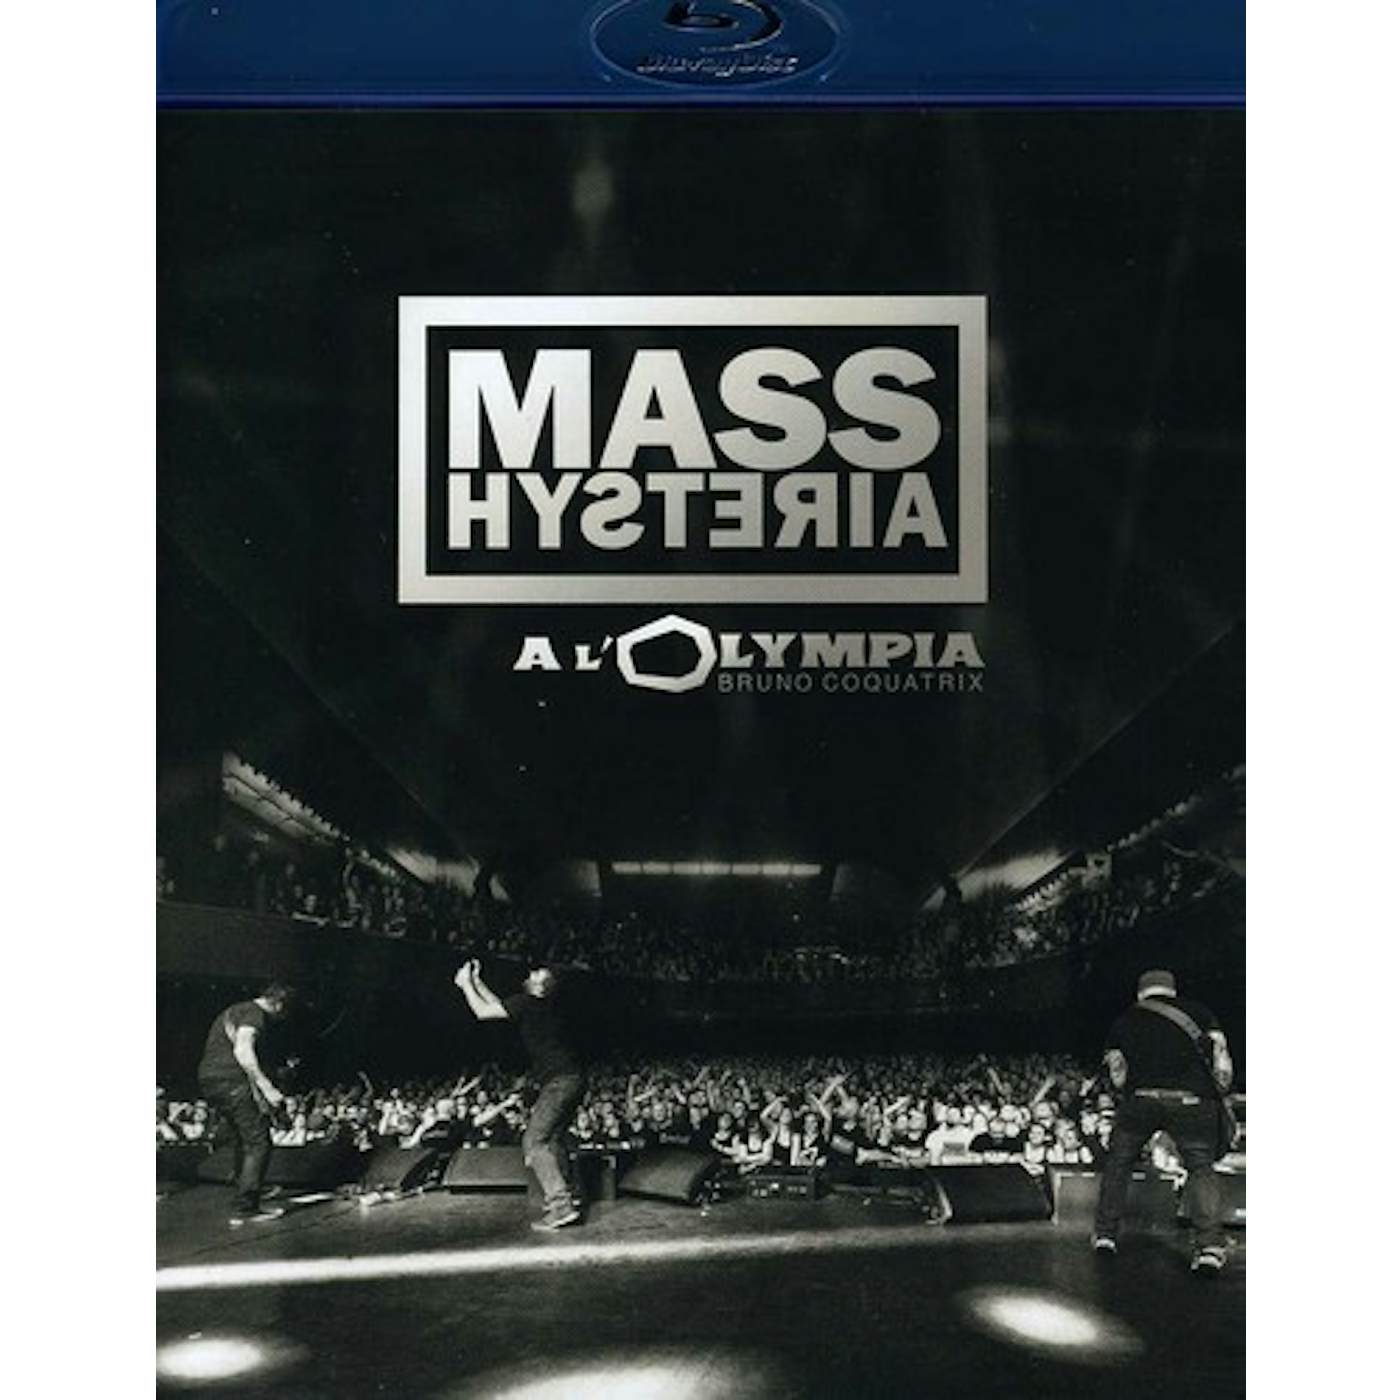 Mass Hysteria A L'OLYMPIA Blu-ray